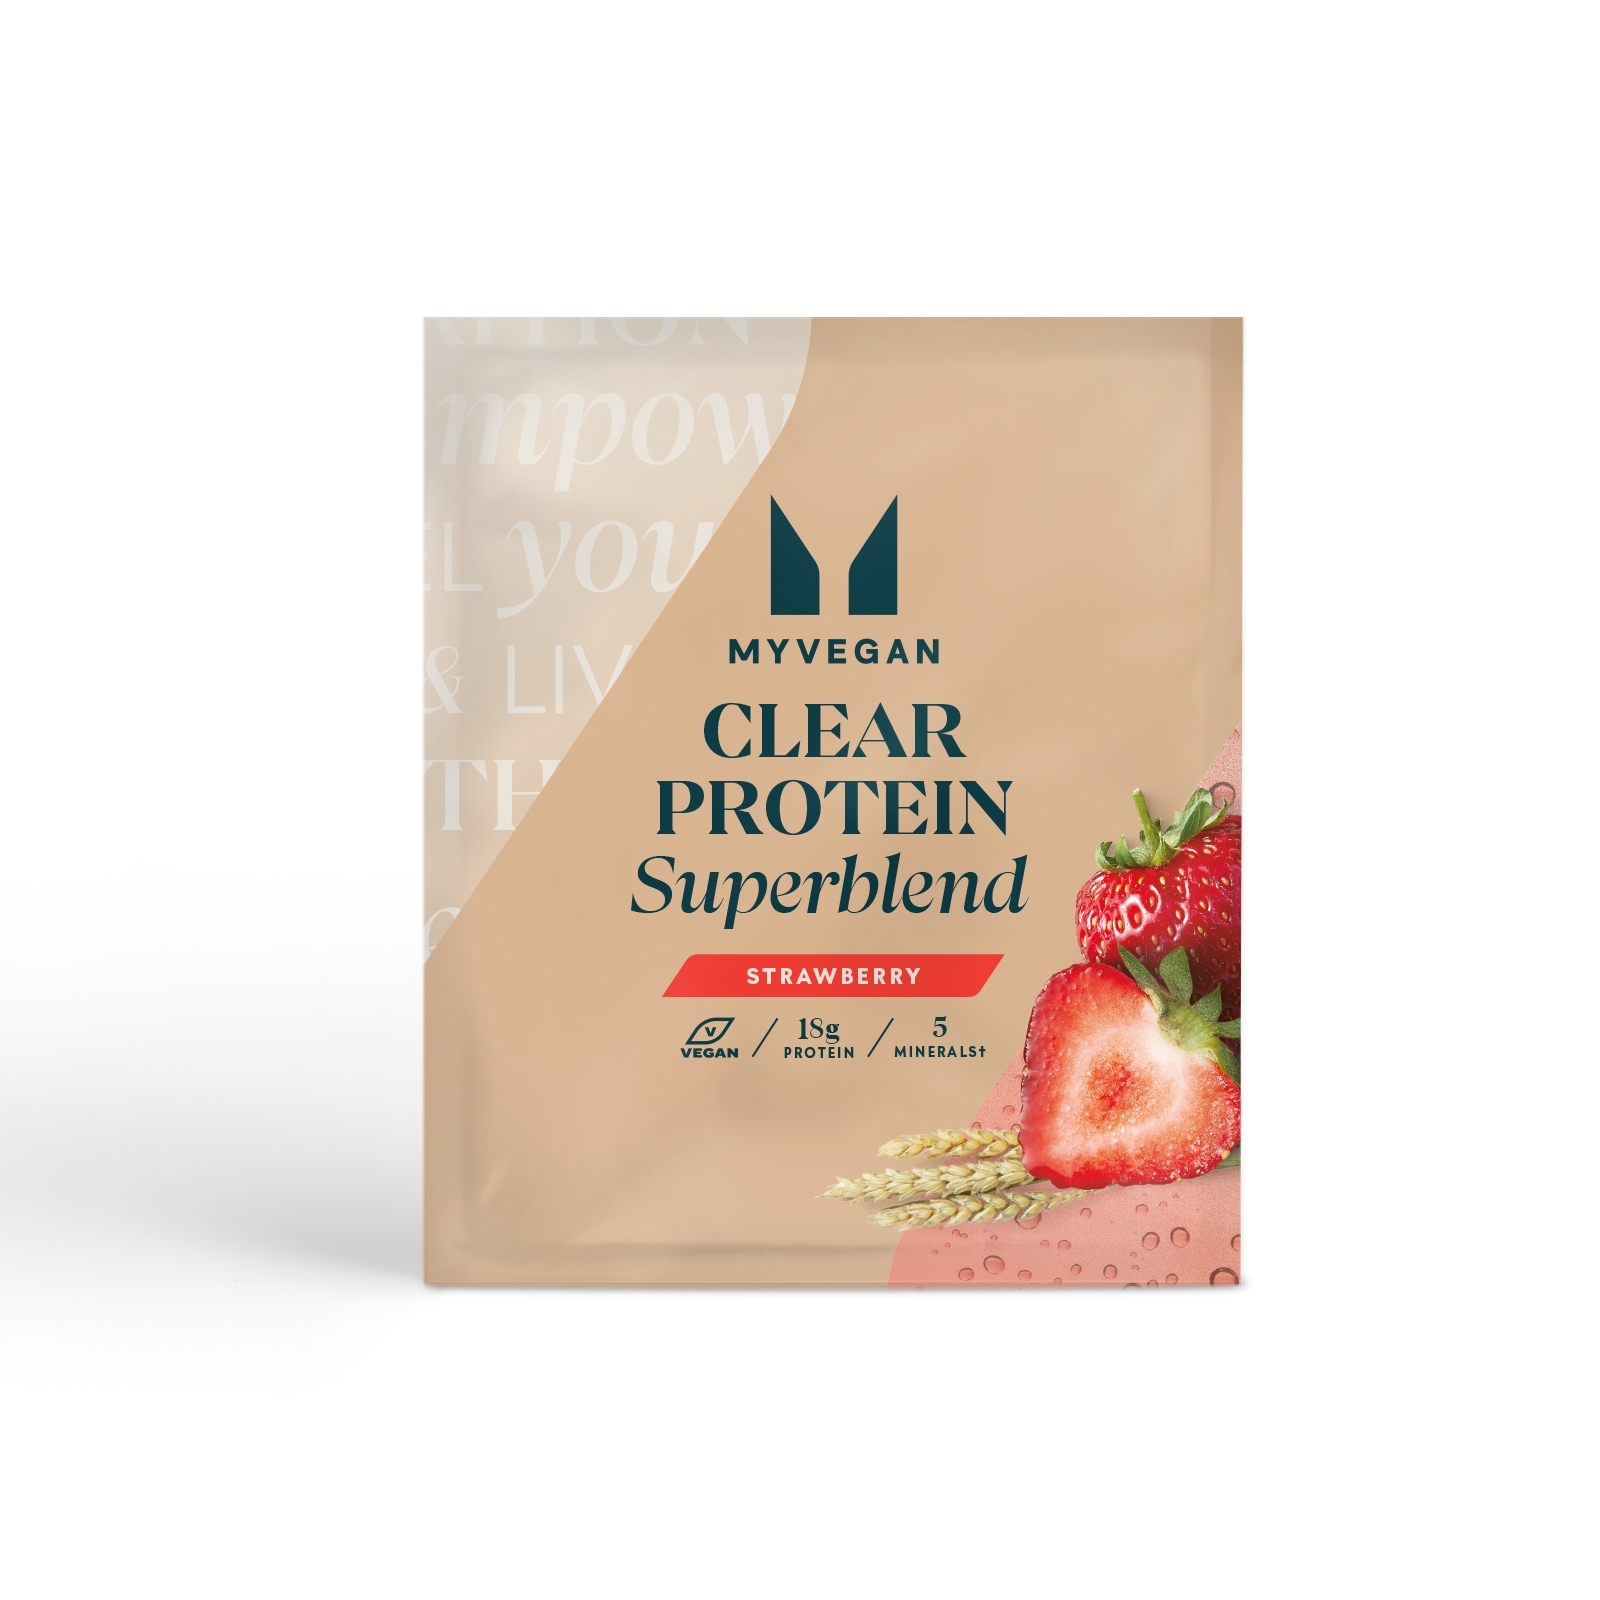 Myvegan UK Myvegan Clear Protein Superblend (Sample) - 1servings - Strawberry